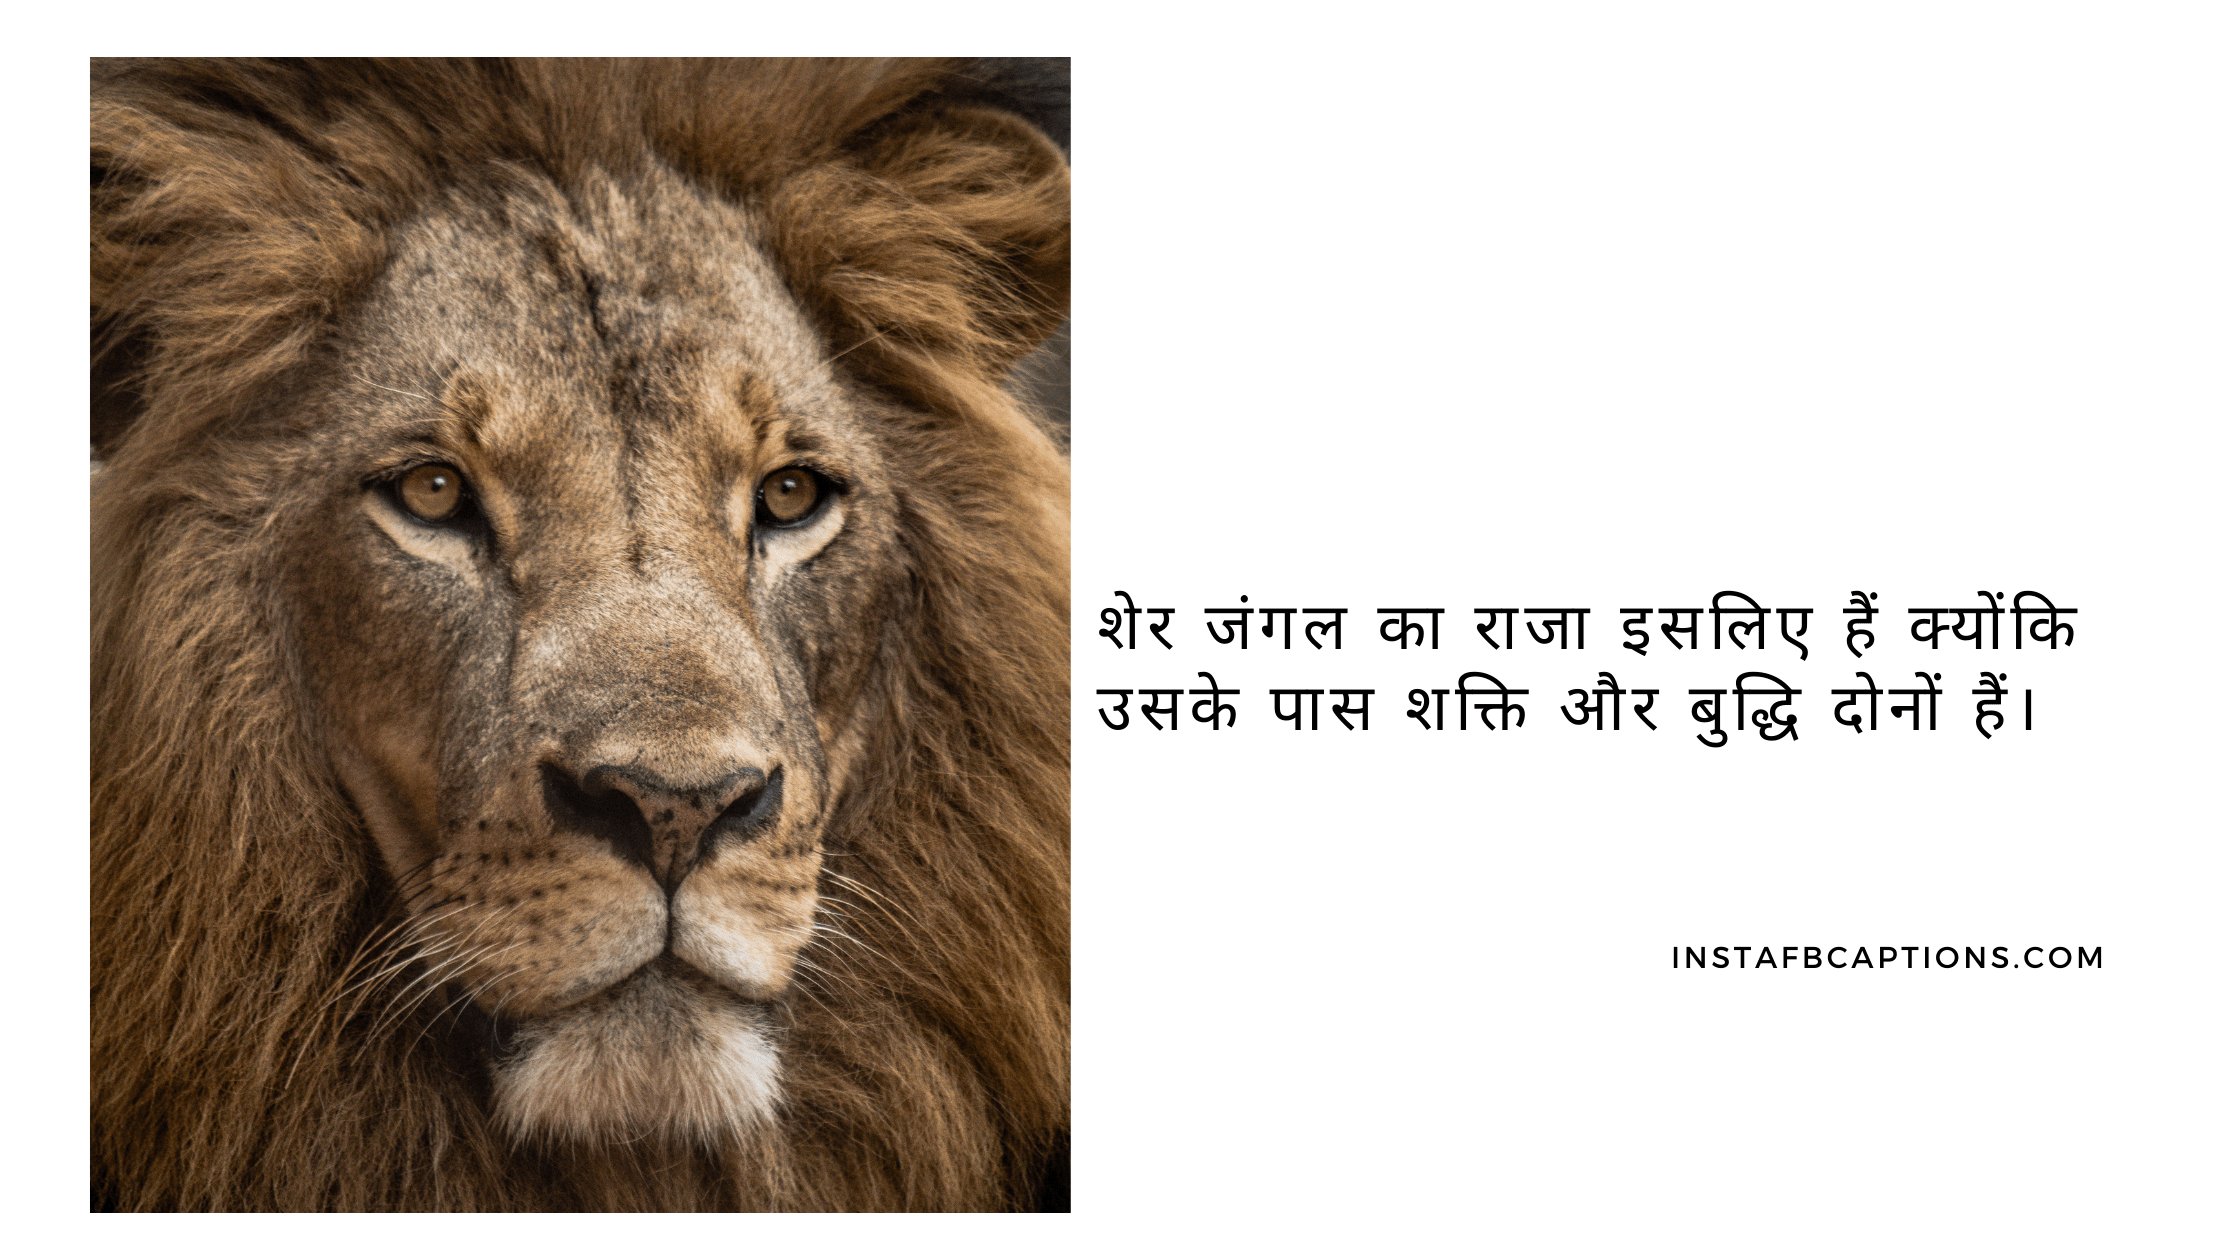 शेर जंगल का राजा इसलिए हैं क्योंकि उसके पास शक्ति और बुद्धि दोनों हैं। king captions for instagram - Amazing Lion King Captions in Hindi For Instagram - 95+ King Captions For Instagram Posts in 2022